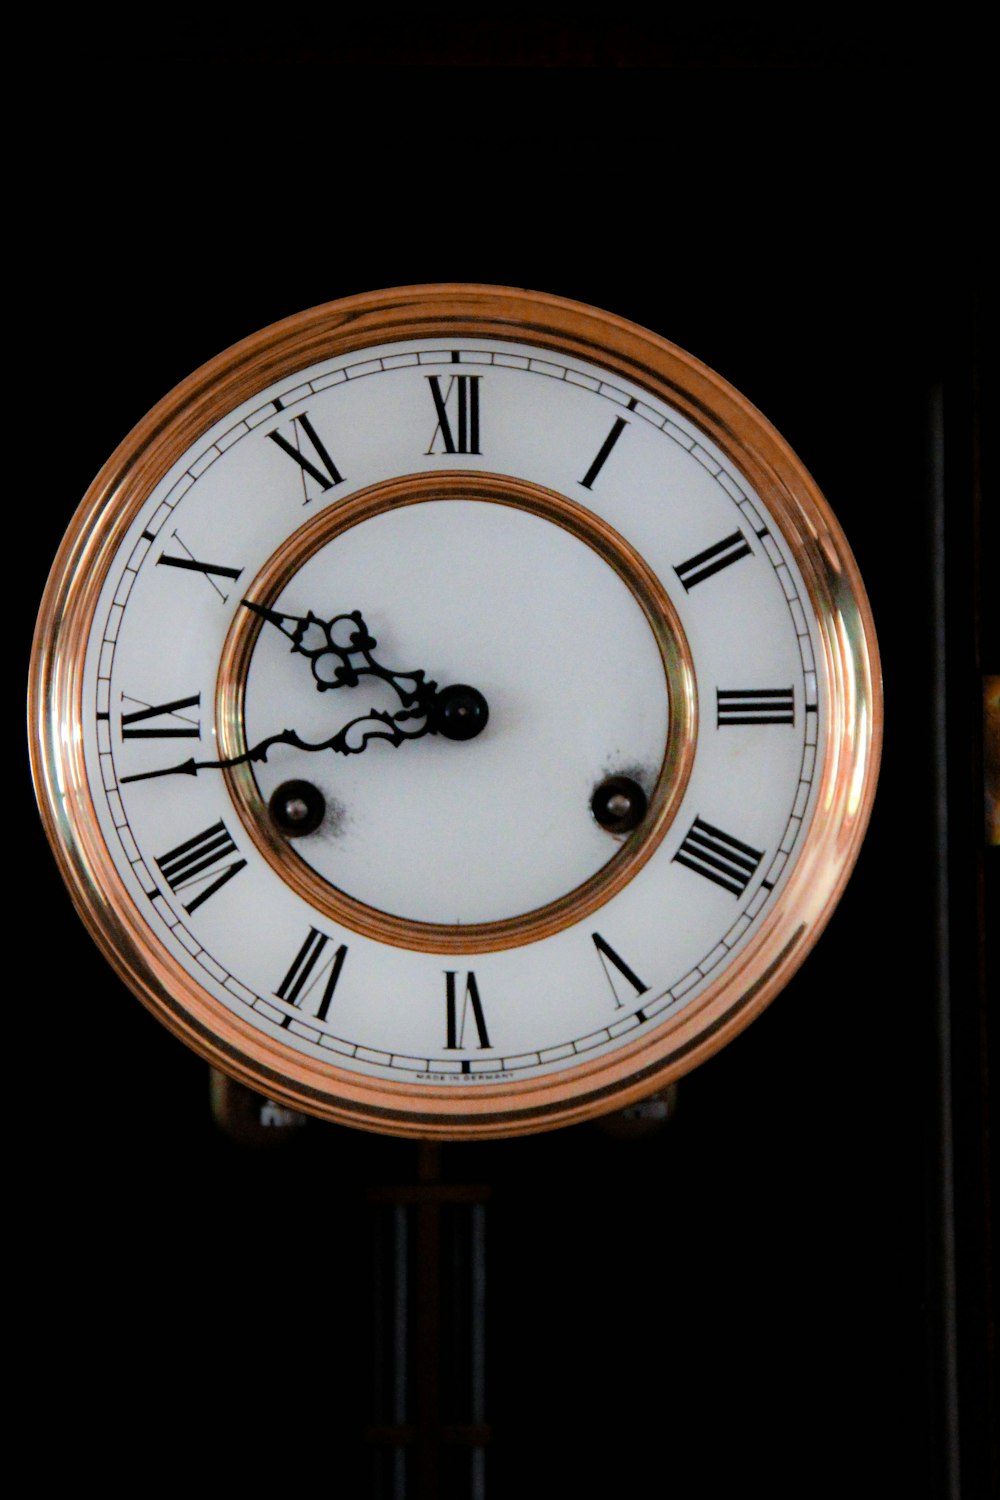 Reloj analógico dorado y blanco